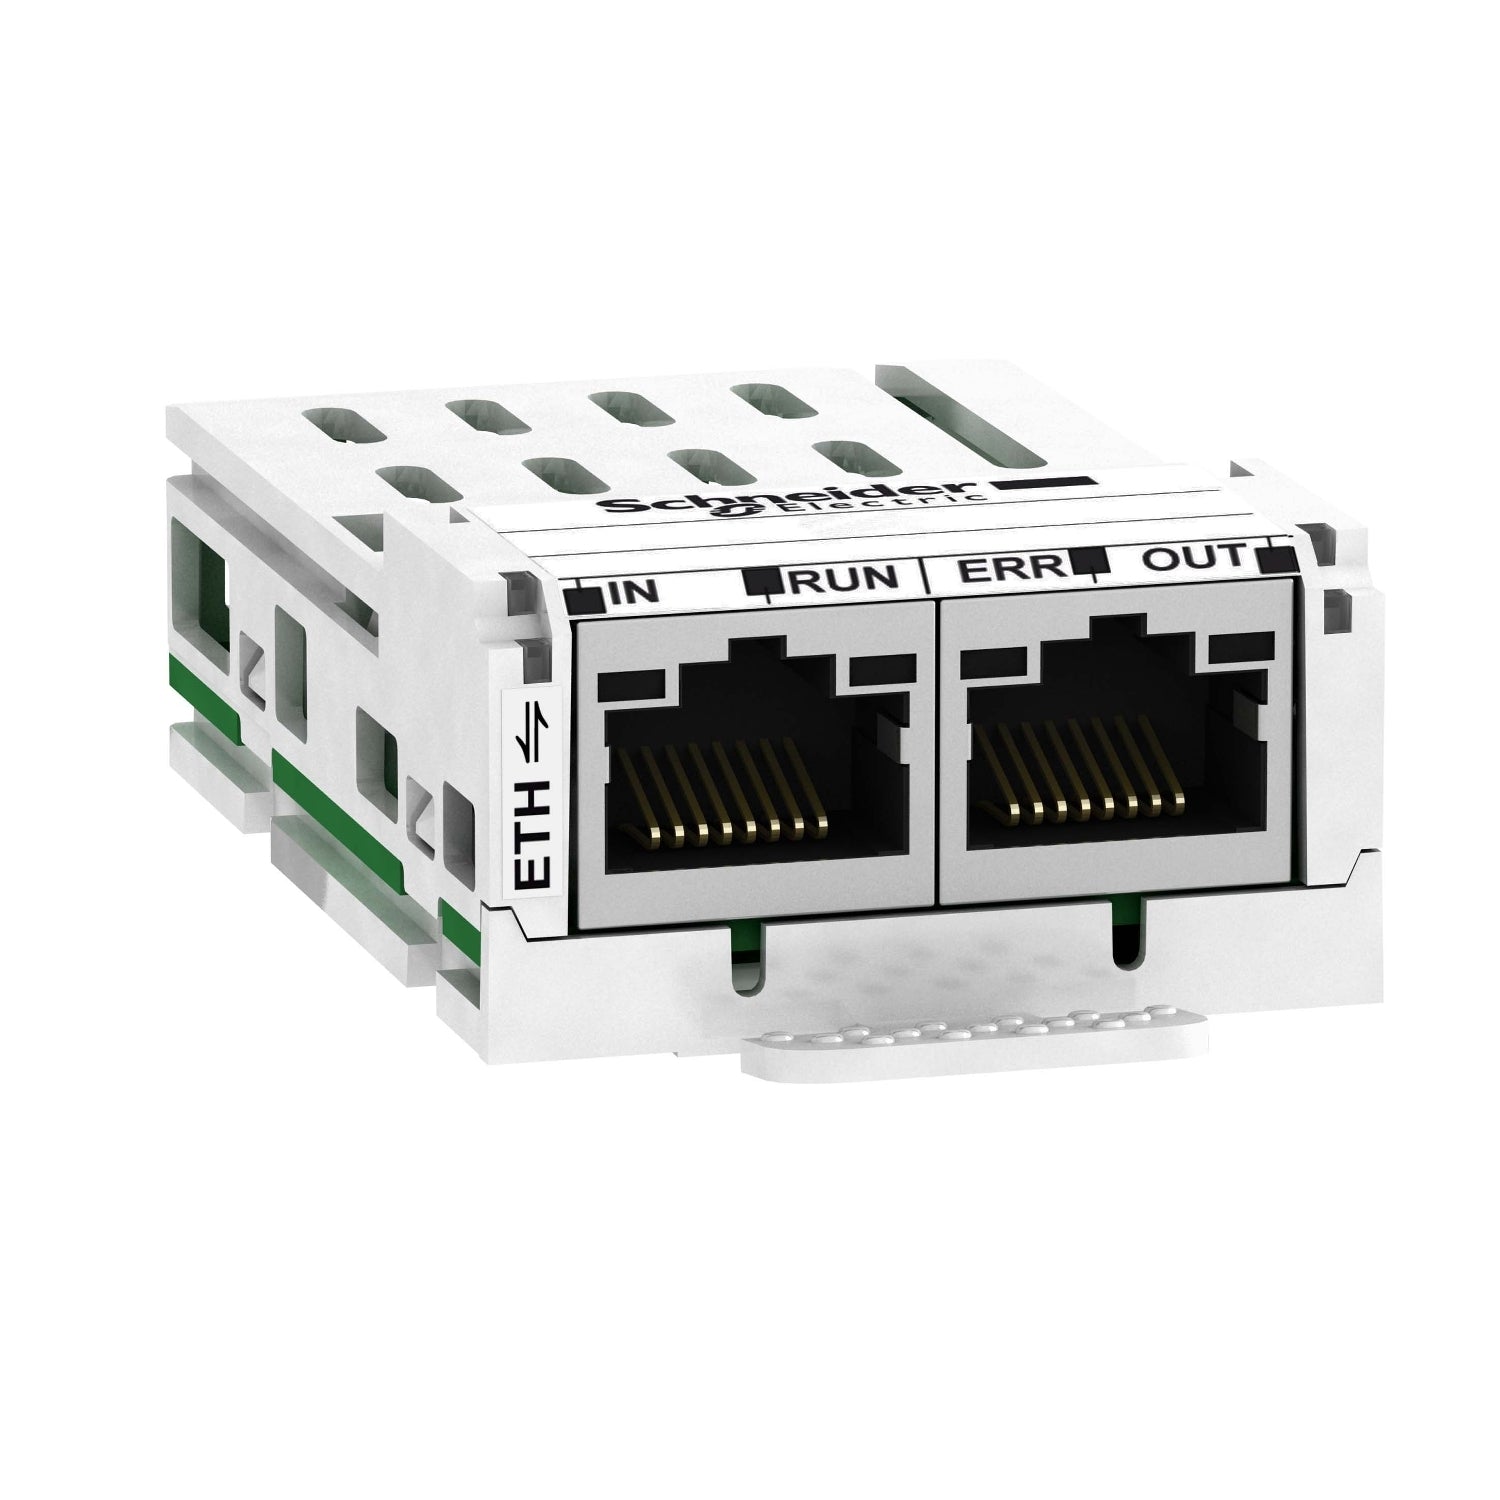 VW3A3601 | Schneider Electric Communication module Ethercat, Altivar, 100Mbps, 2 x RJ45 connectors